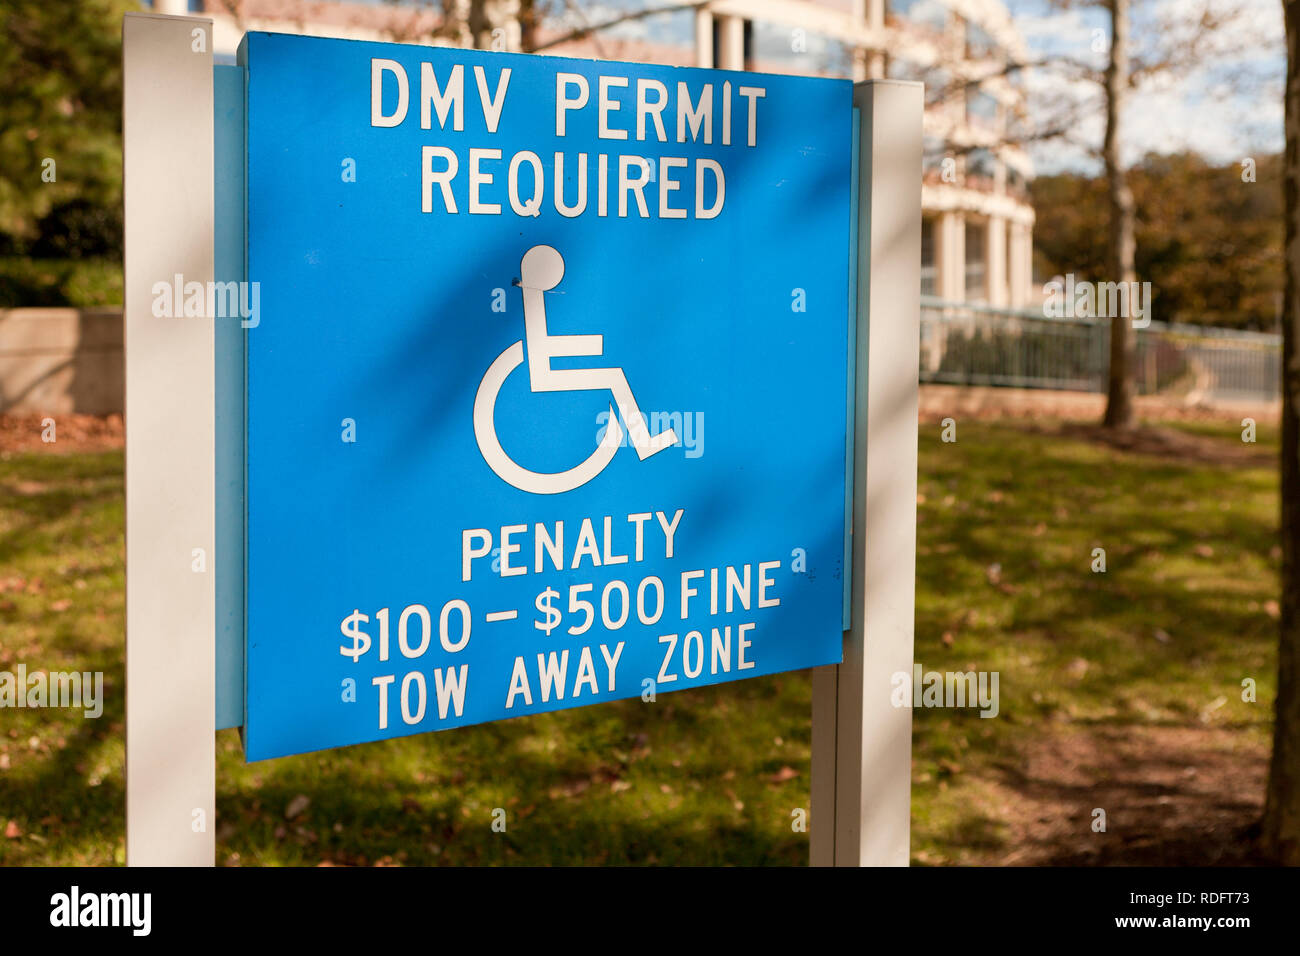 Panneau de stationnement pour personnes handicapées (panneau de stationnement pour personnes handicapées) Avec avertissement pour pénalité - Etats-Unis Banque D'Images